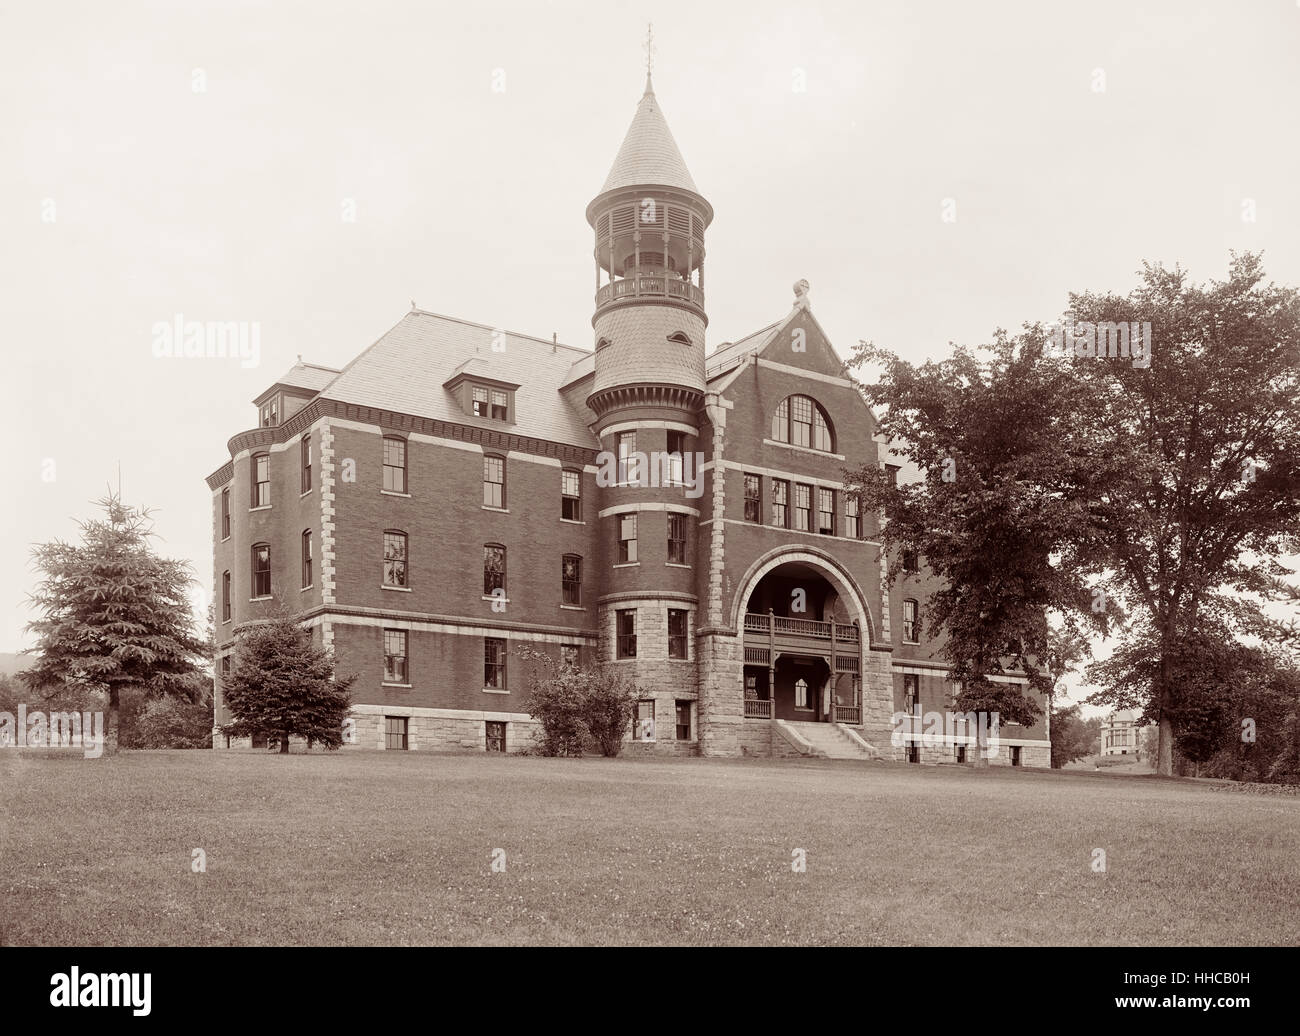 Marquand Hall am Northfield Seminary, eine Schule für junge Frauen, von bekannten aus dem 19. Jahrhundert Evangelist d.l. Moody in East Northfield, Massachusetts gegründet. (Foto von Detroit Publishing Co. zwischen 1900 und 1906.) Stockfoto